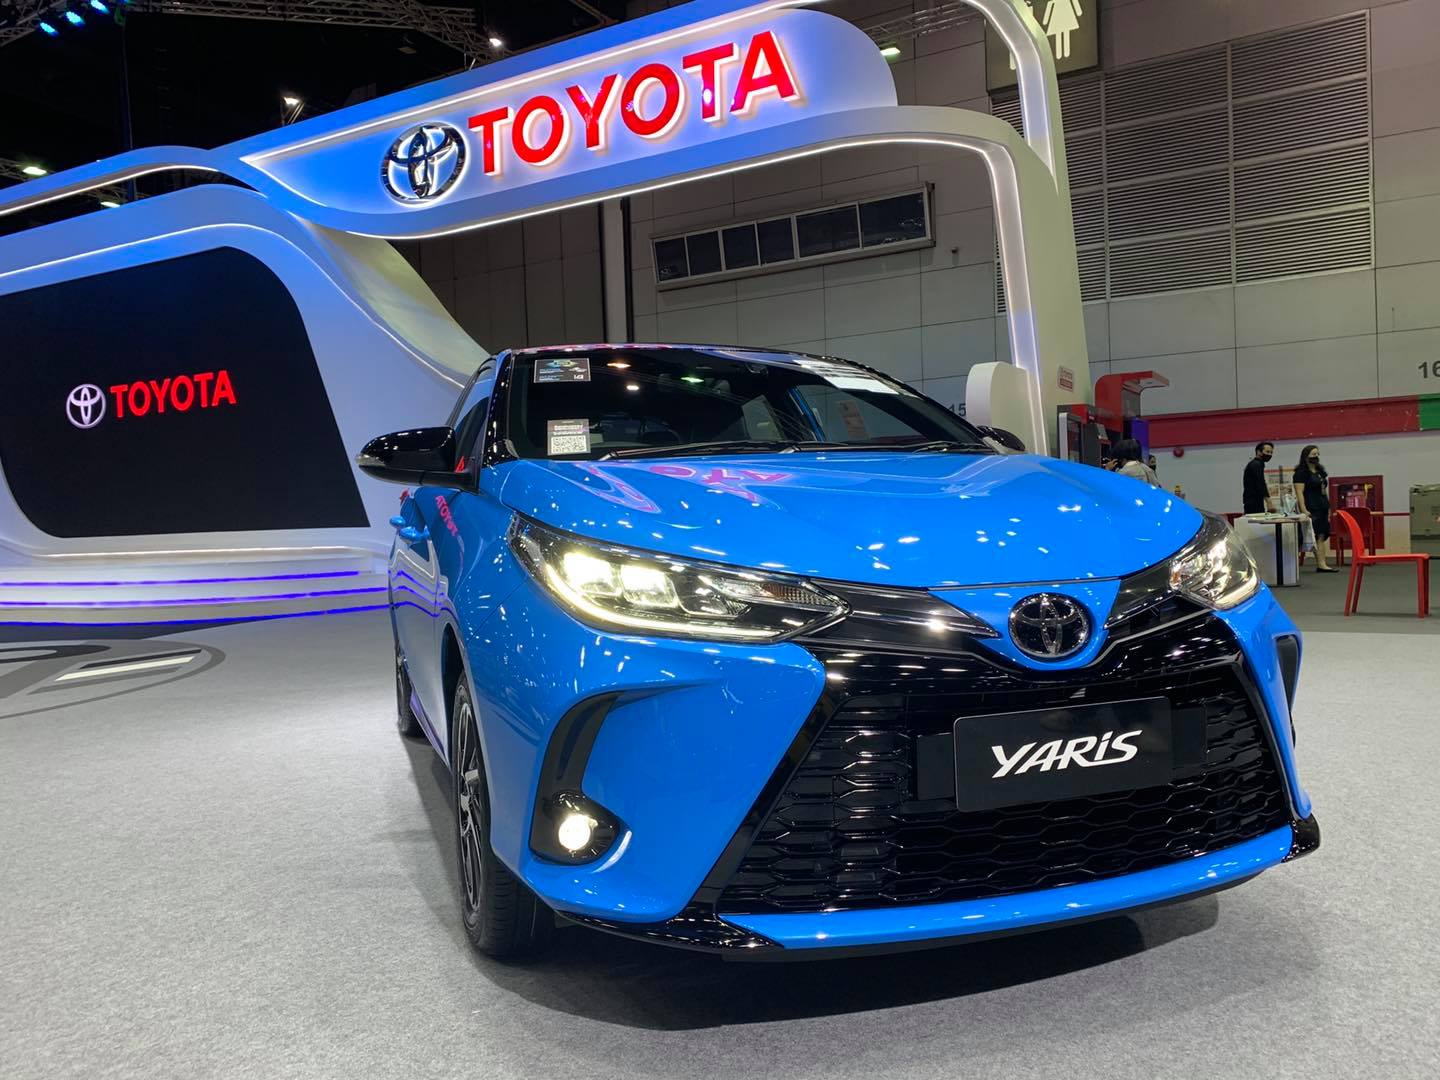 Đại lý bất ngờ nhận đặt cọc Toyota Yaris 2021: Đầu xe giống Camry, dự kiến tháng 10 về Việt Nam - Ảnh 2.